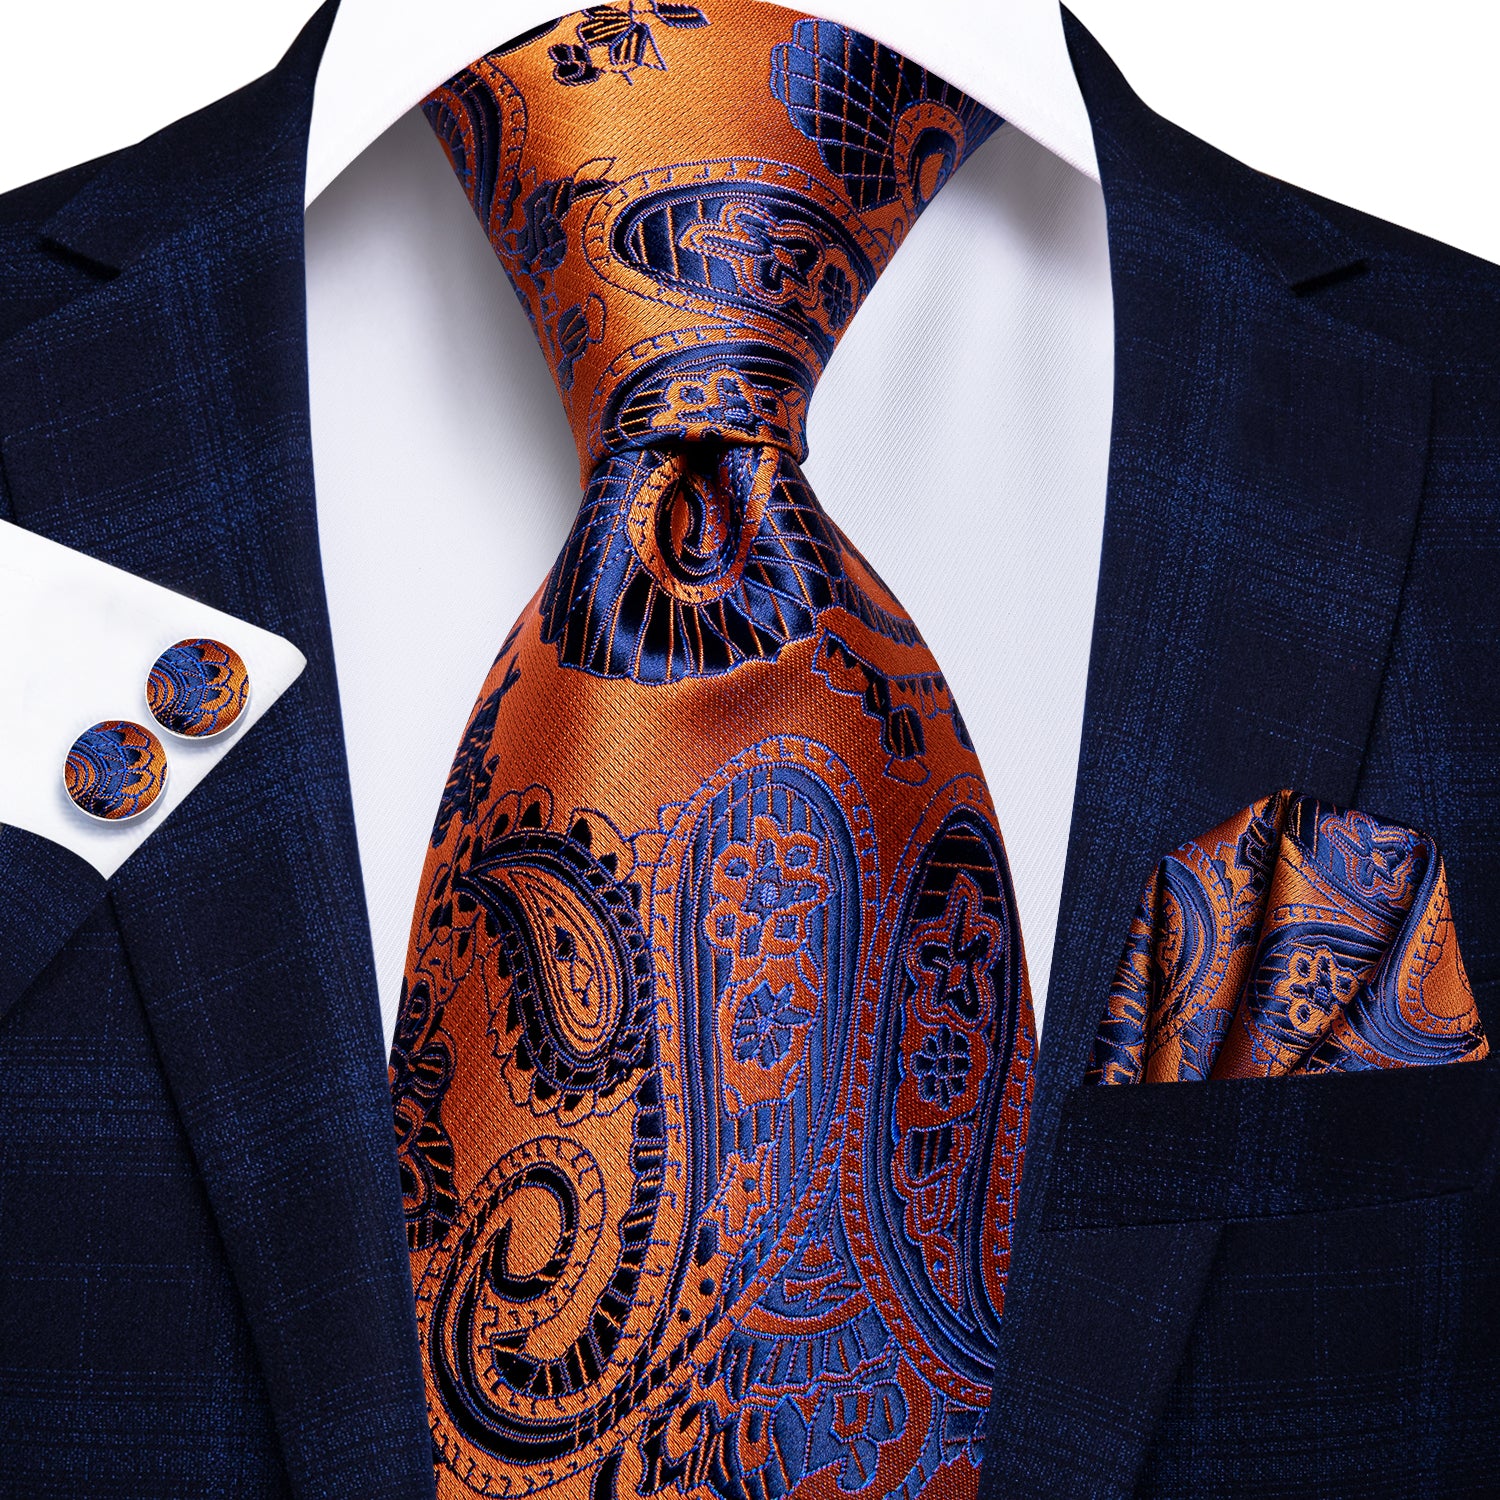 100% Silk Luxury Men's NeckTie Pocket Square Cufflinks Set